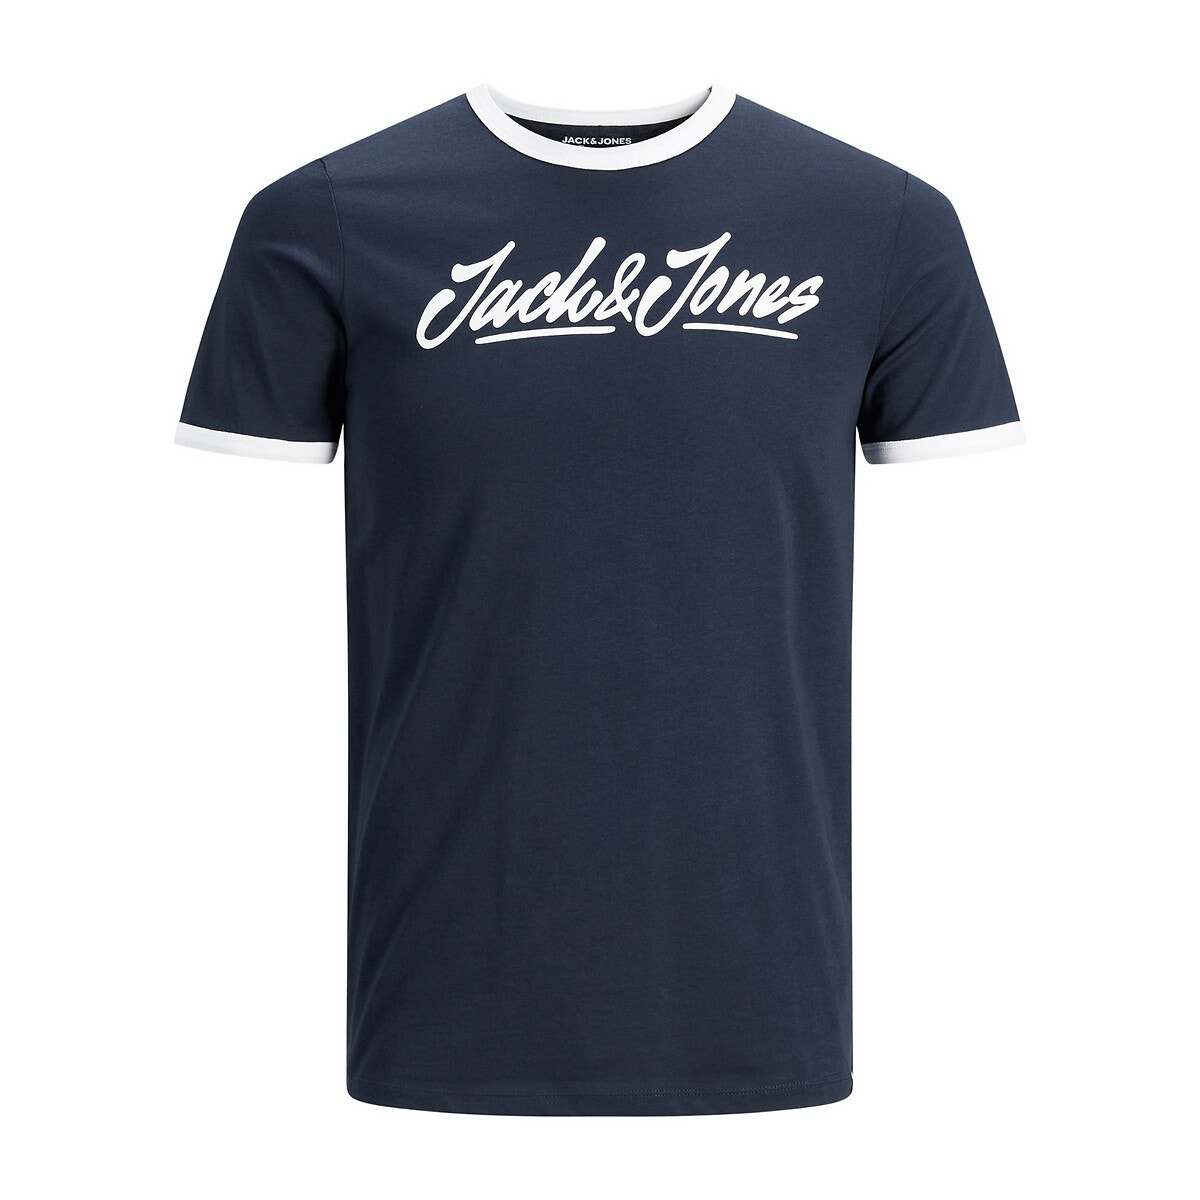 ΑΝΔΡΑΣ | Μπλούζες & Πουκάμισα | T-shirts Κοντομάνικο T-shirt, Jorlegend